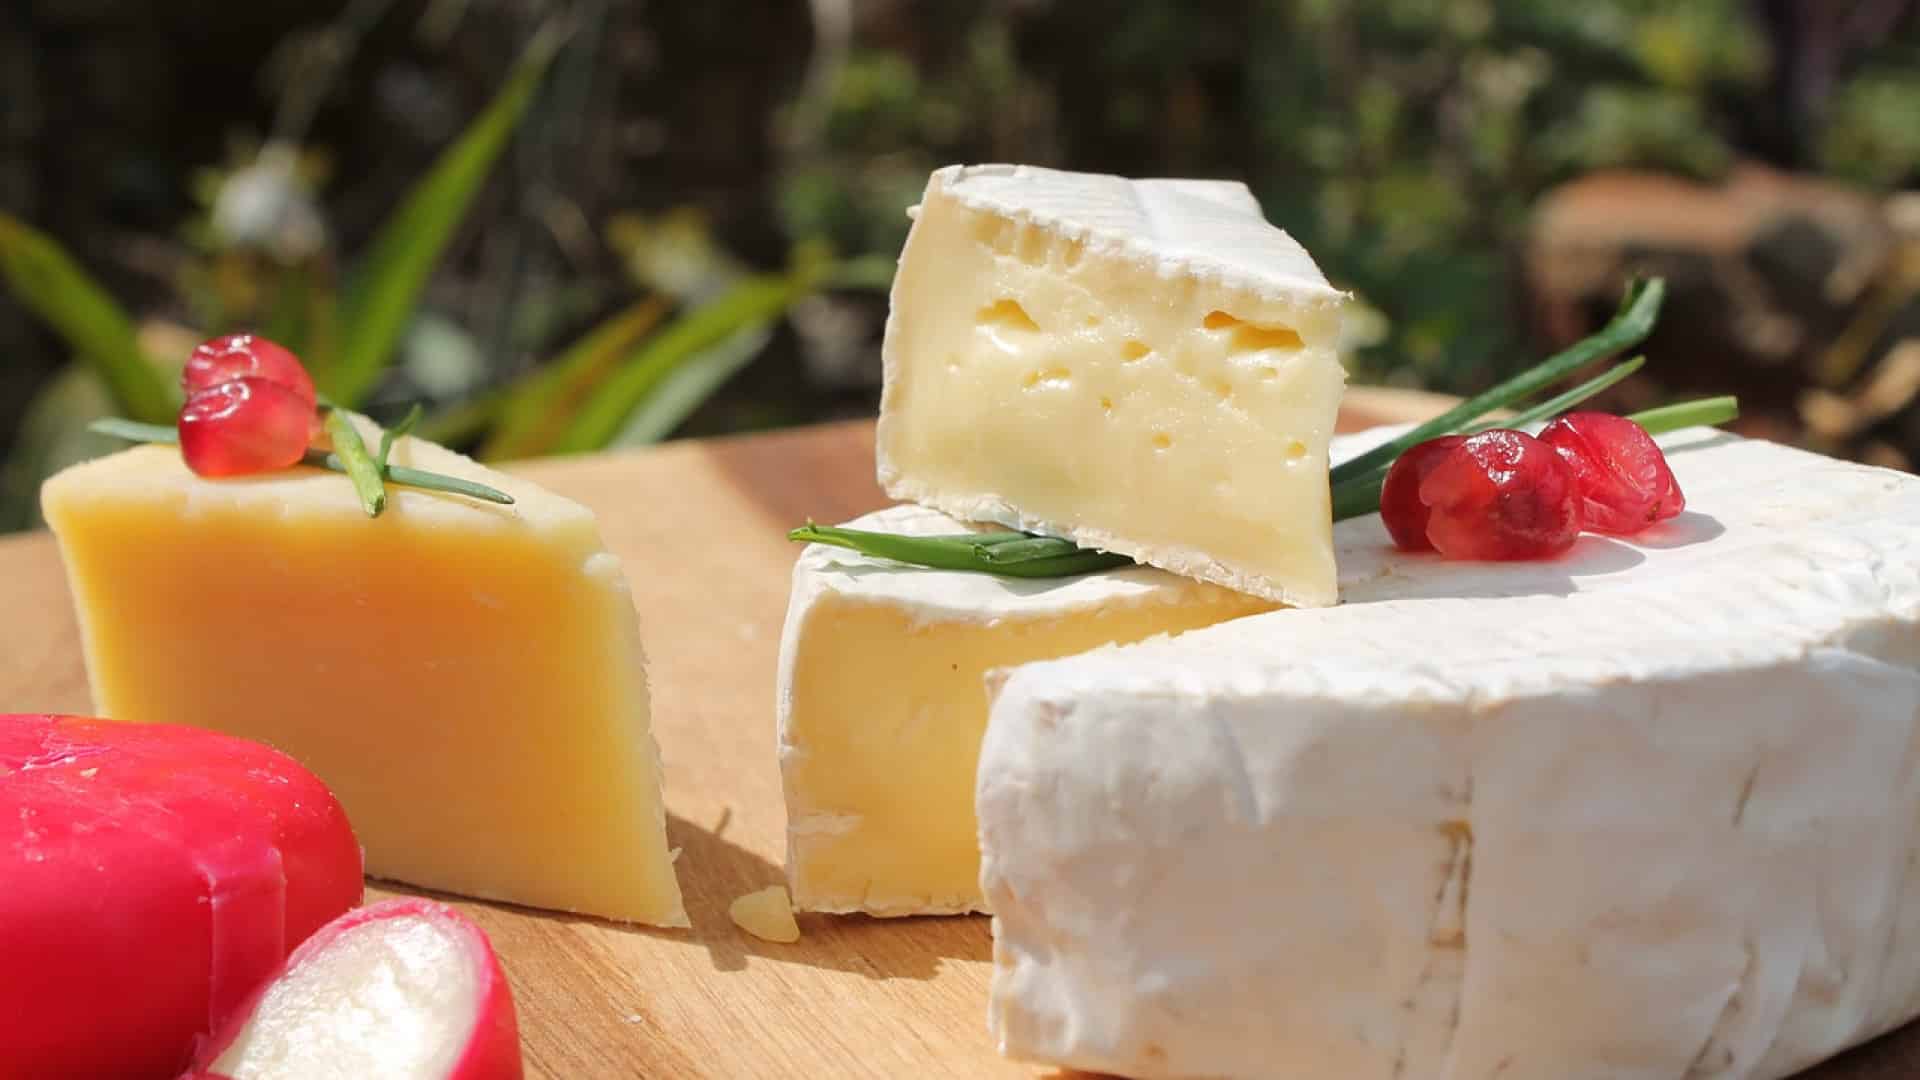 Le fromage, un allié pour la santé et la bonne humeur